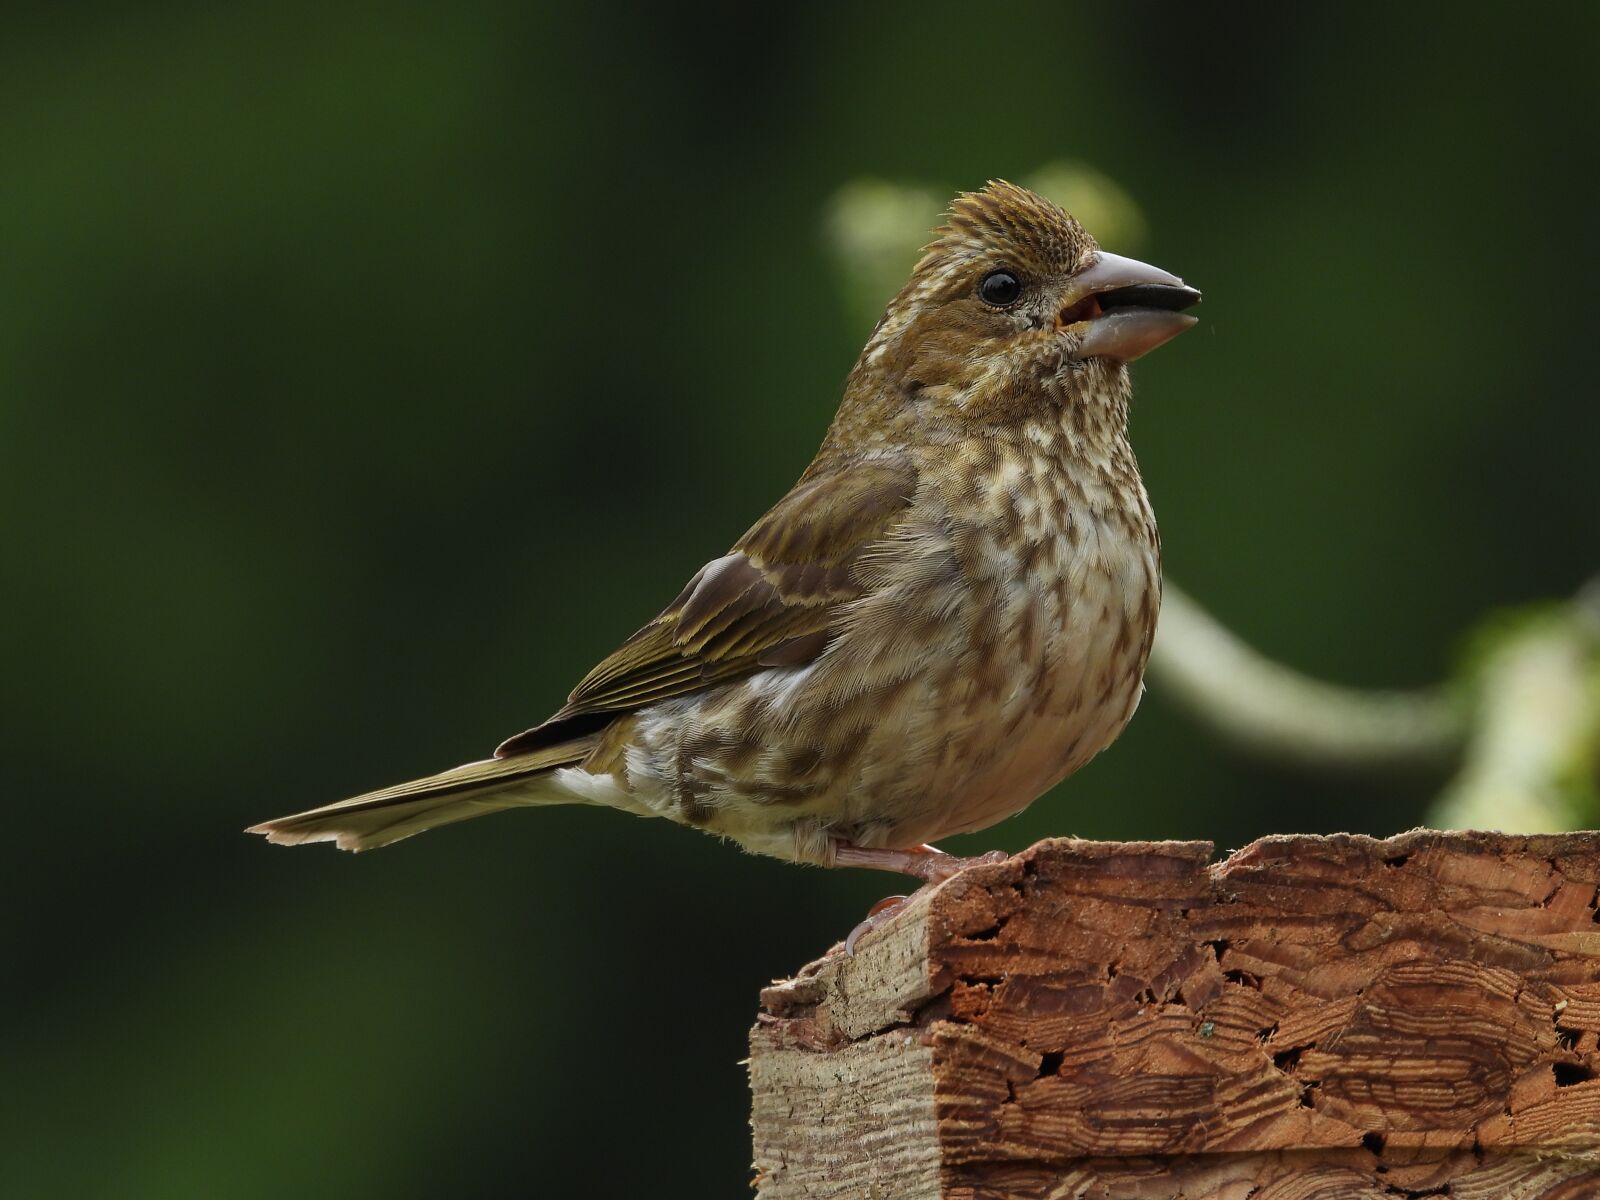 Nikon Coolpix P1000 sample photo. Sparrow, bird, nature photography